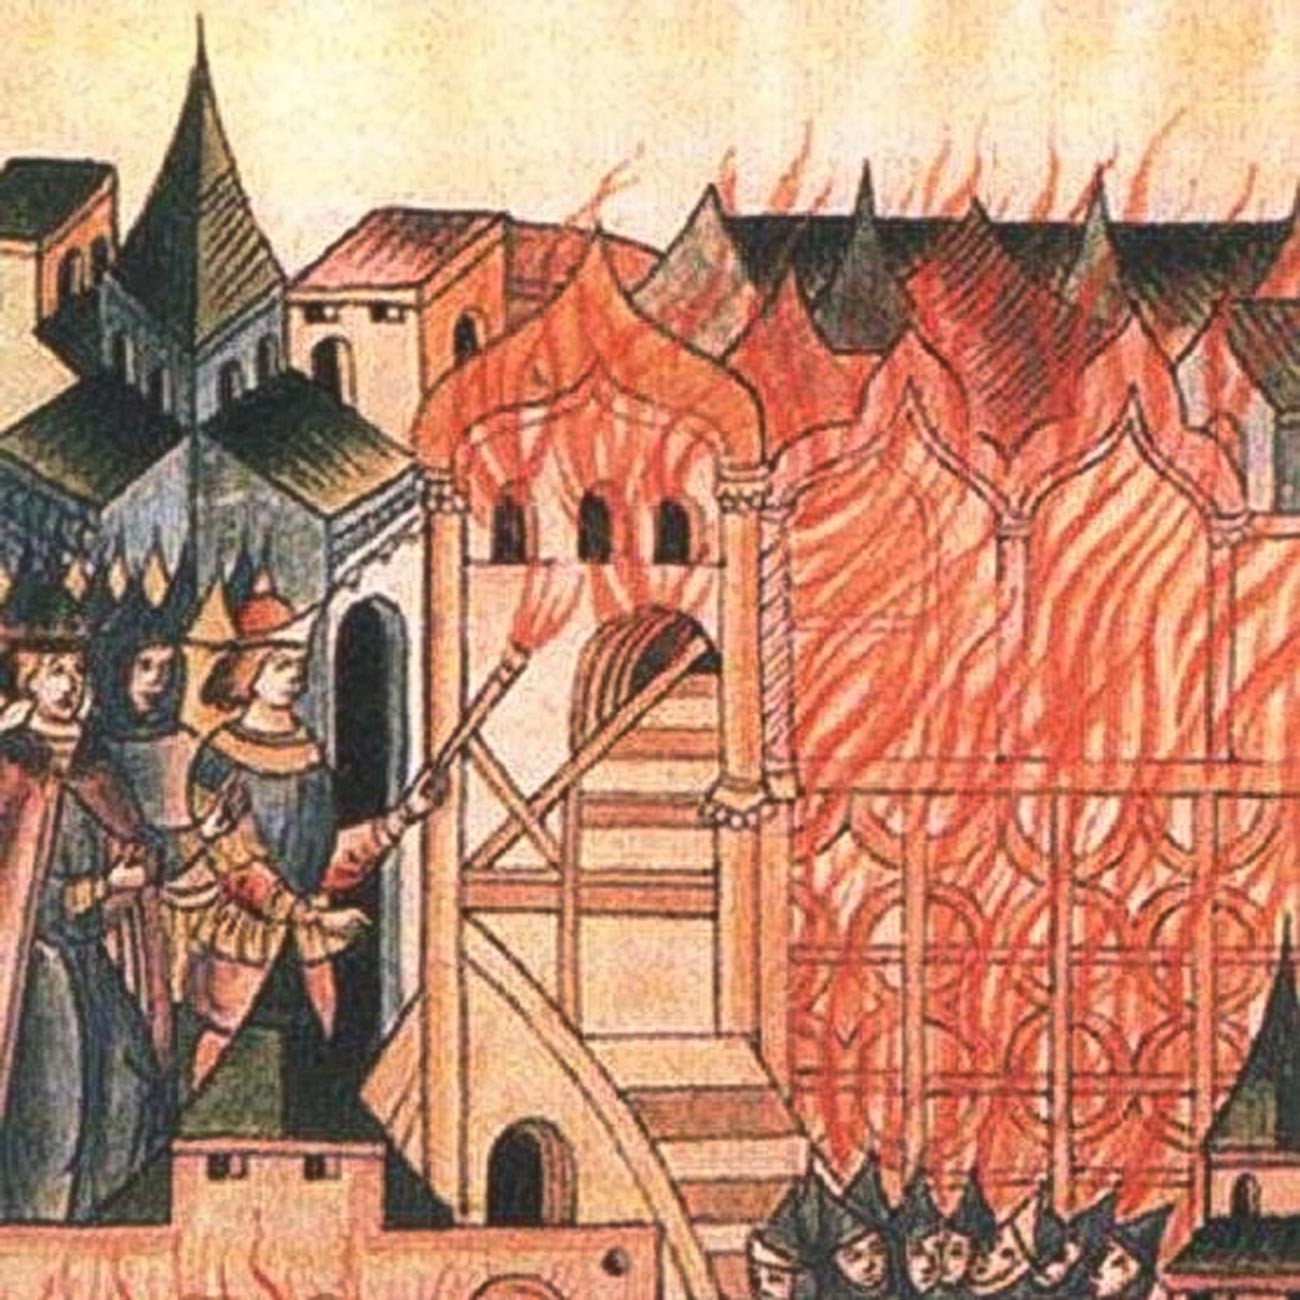 A revolta de Tver em 1328 de acordo com crônica russa do século 16.